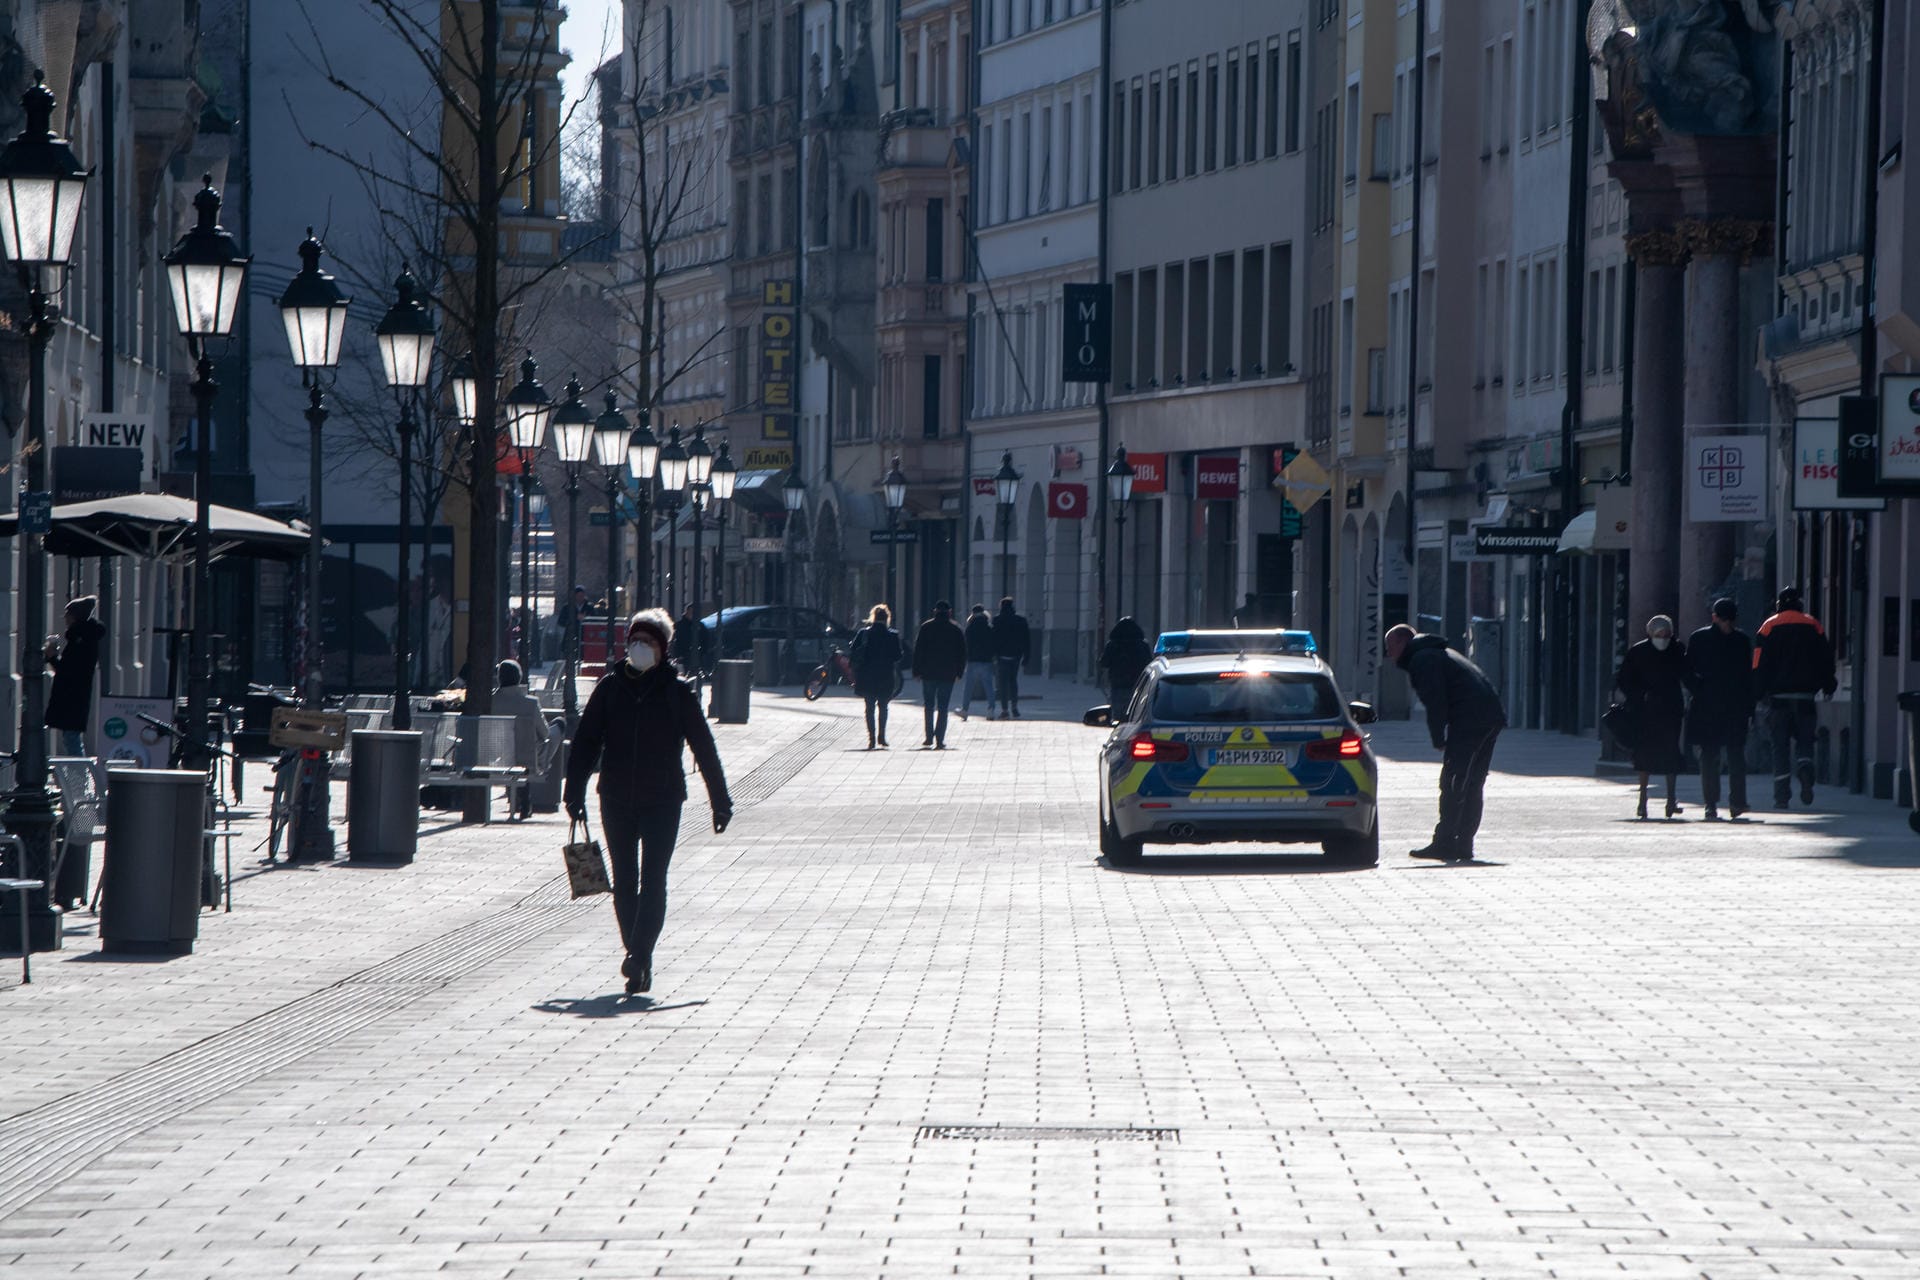 Münchner Innenstadt: Ein Streifenwagen fährt durch die Fußgängerzone, die Straße ist fast menschenleer.